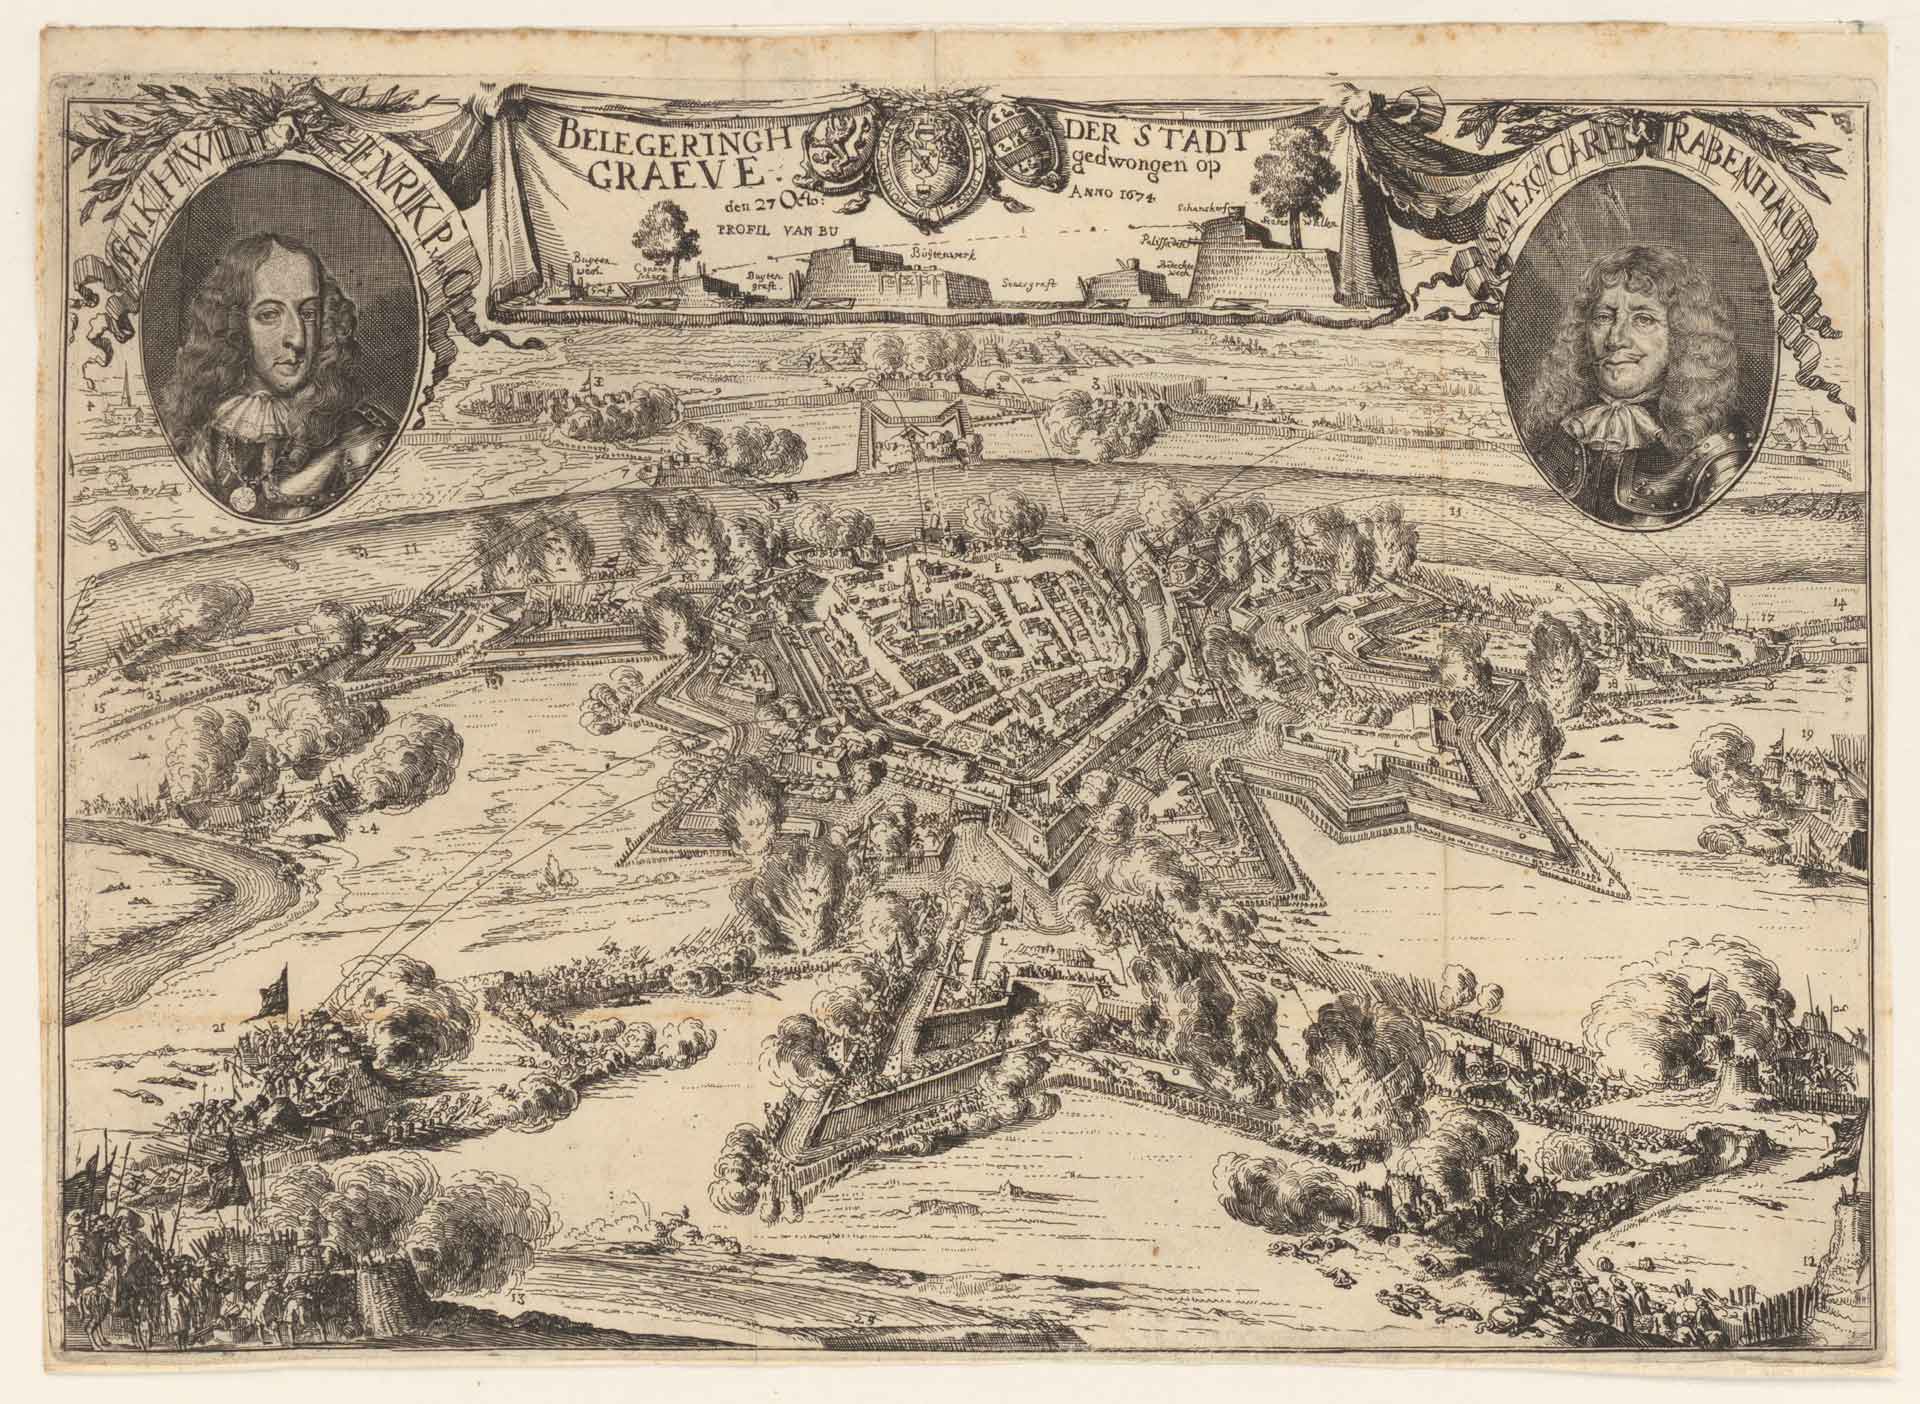 Beleg van Grave door Prins Willem III, 1674 (collectie BHIC nr. 343-1631)